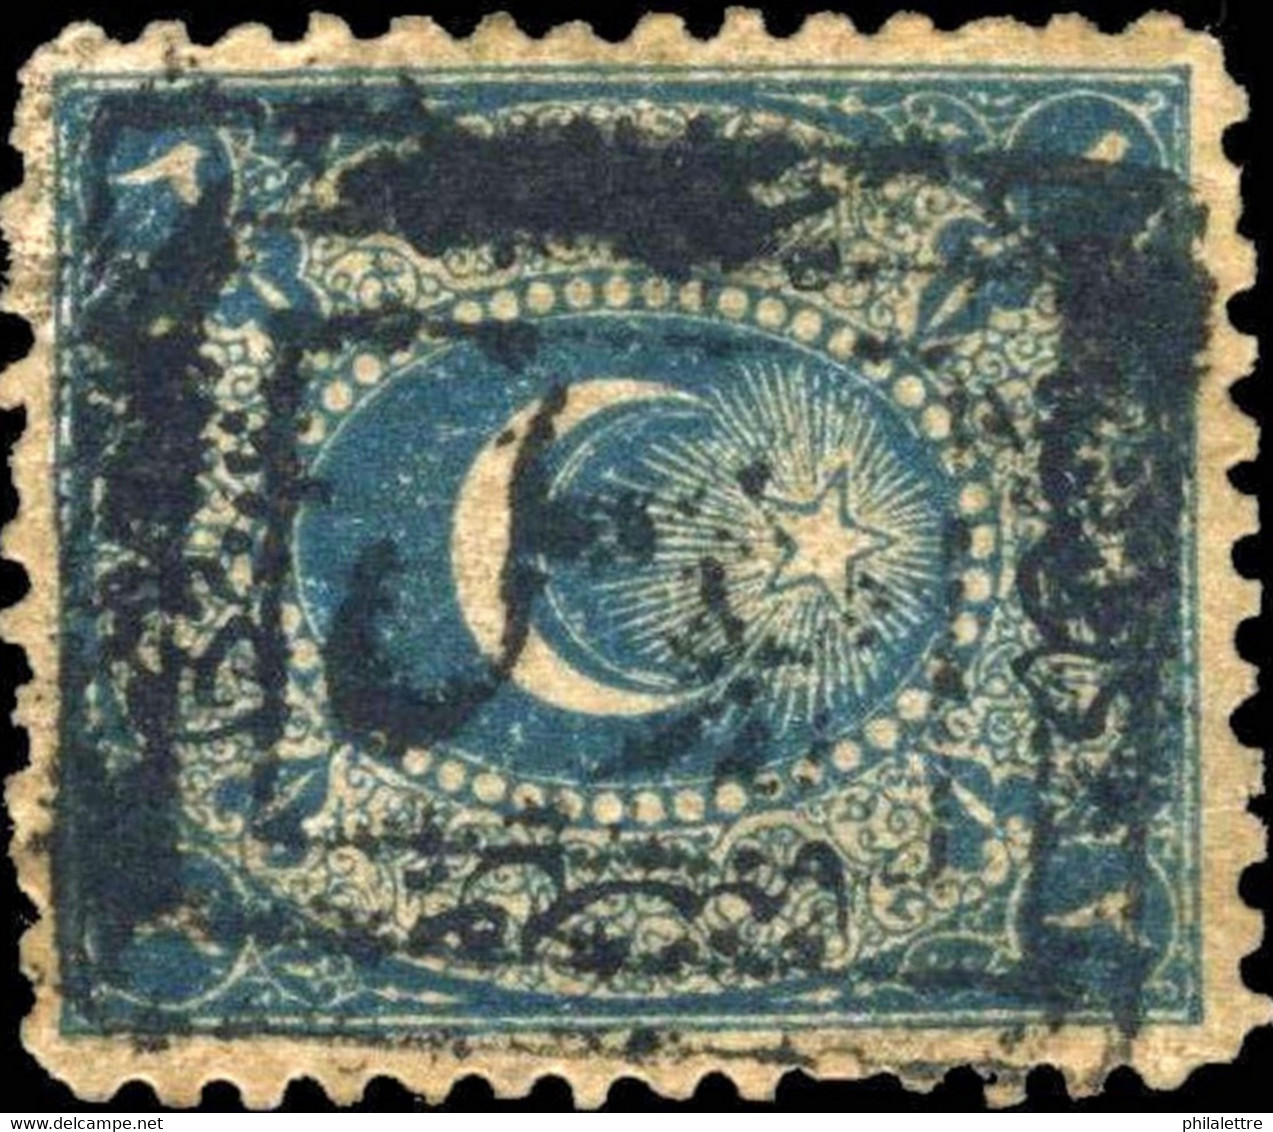 TURQUIE / TURKEY / TÜRKEI - MOSUL (IRAQ) POSTMARK /1867 DULOZ Mi.11 2Pi P.12 1/ 2 - Oblitérés